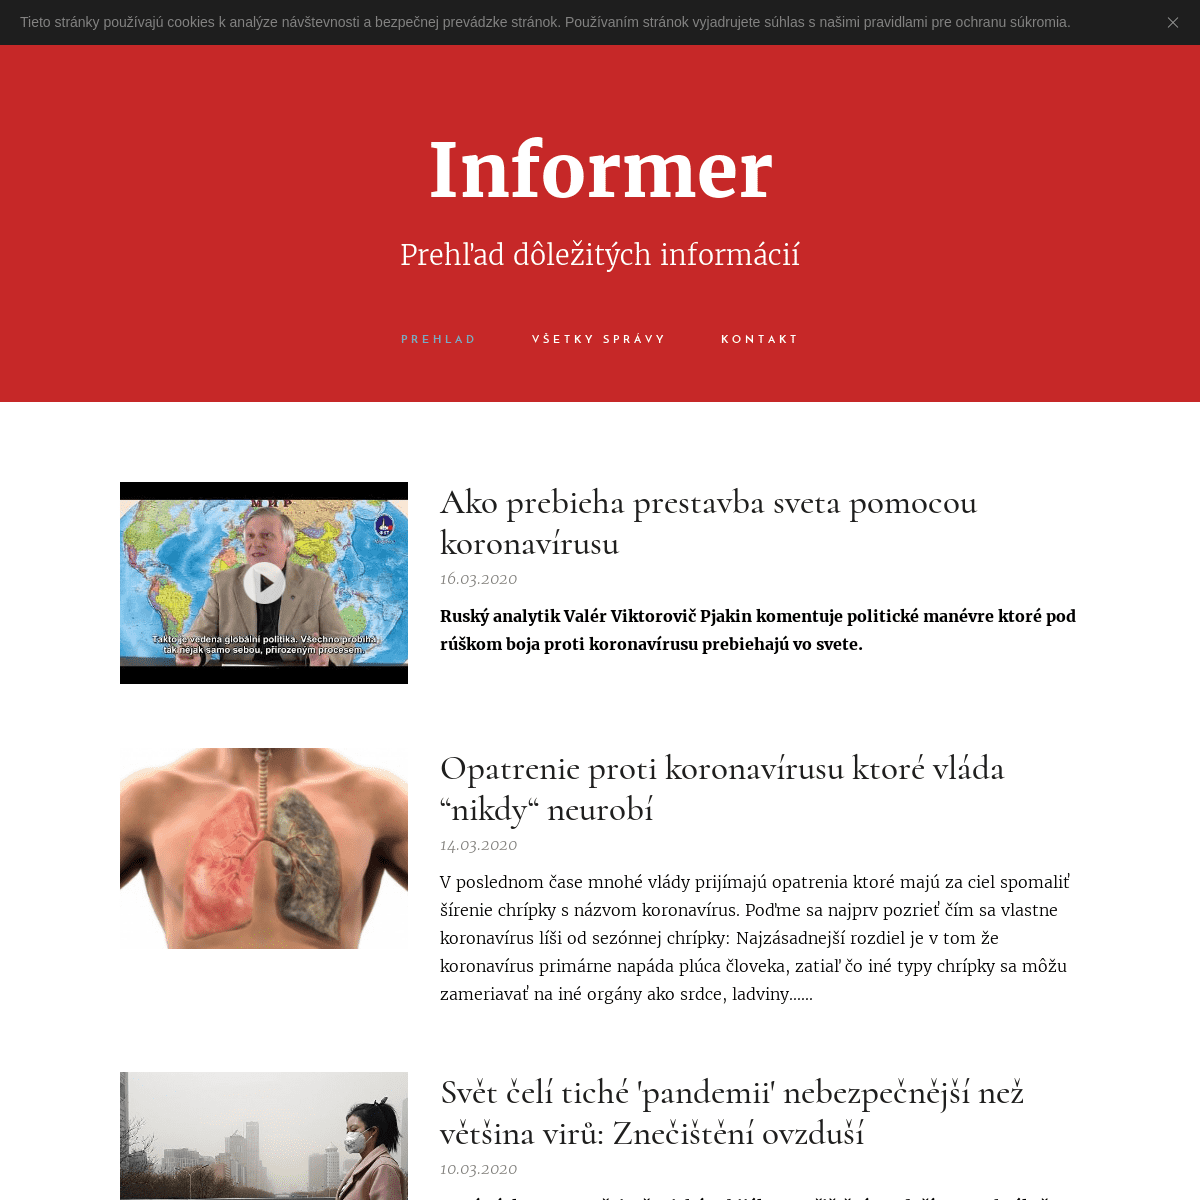 A complete backup of informer-slovensko.com